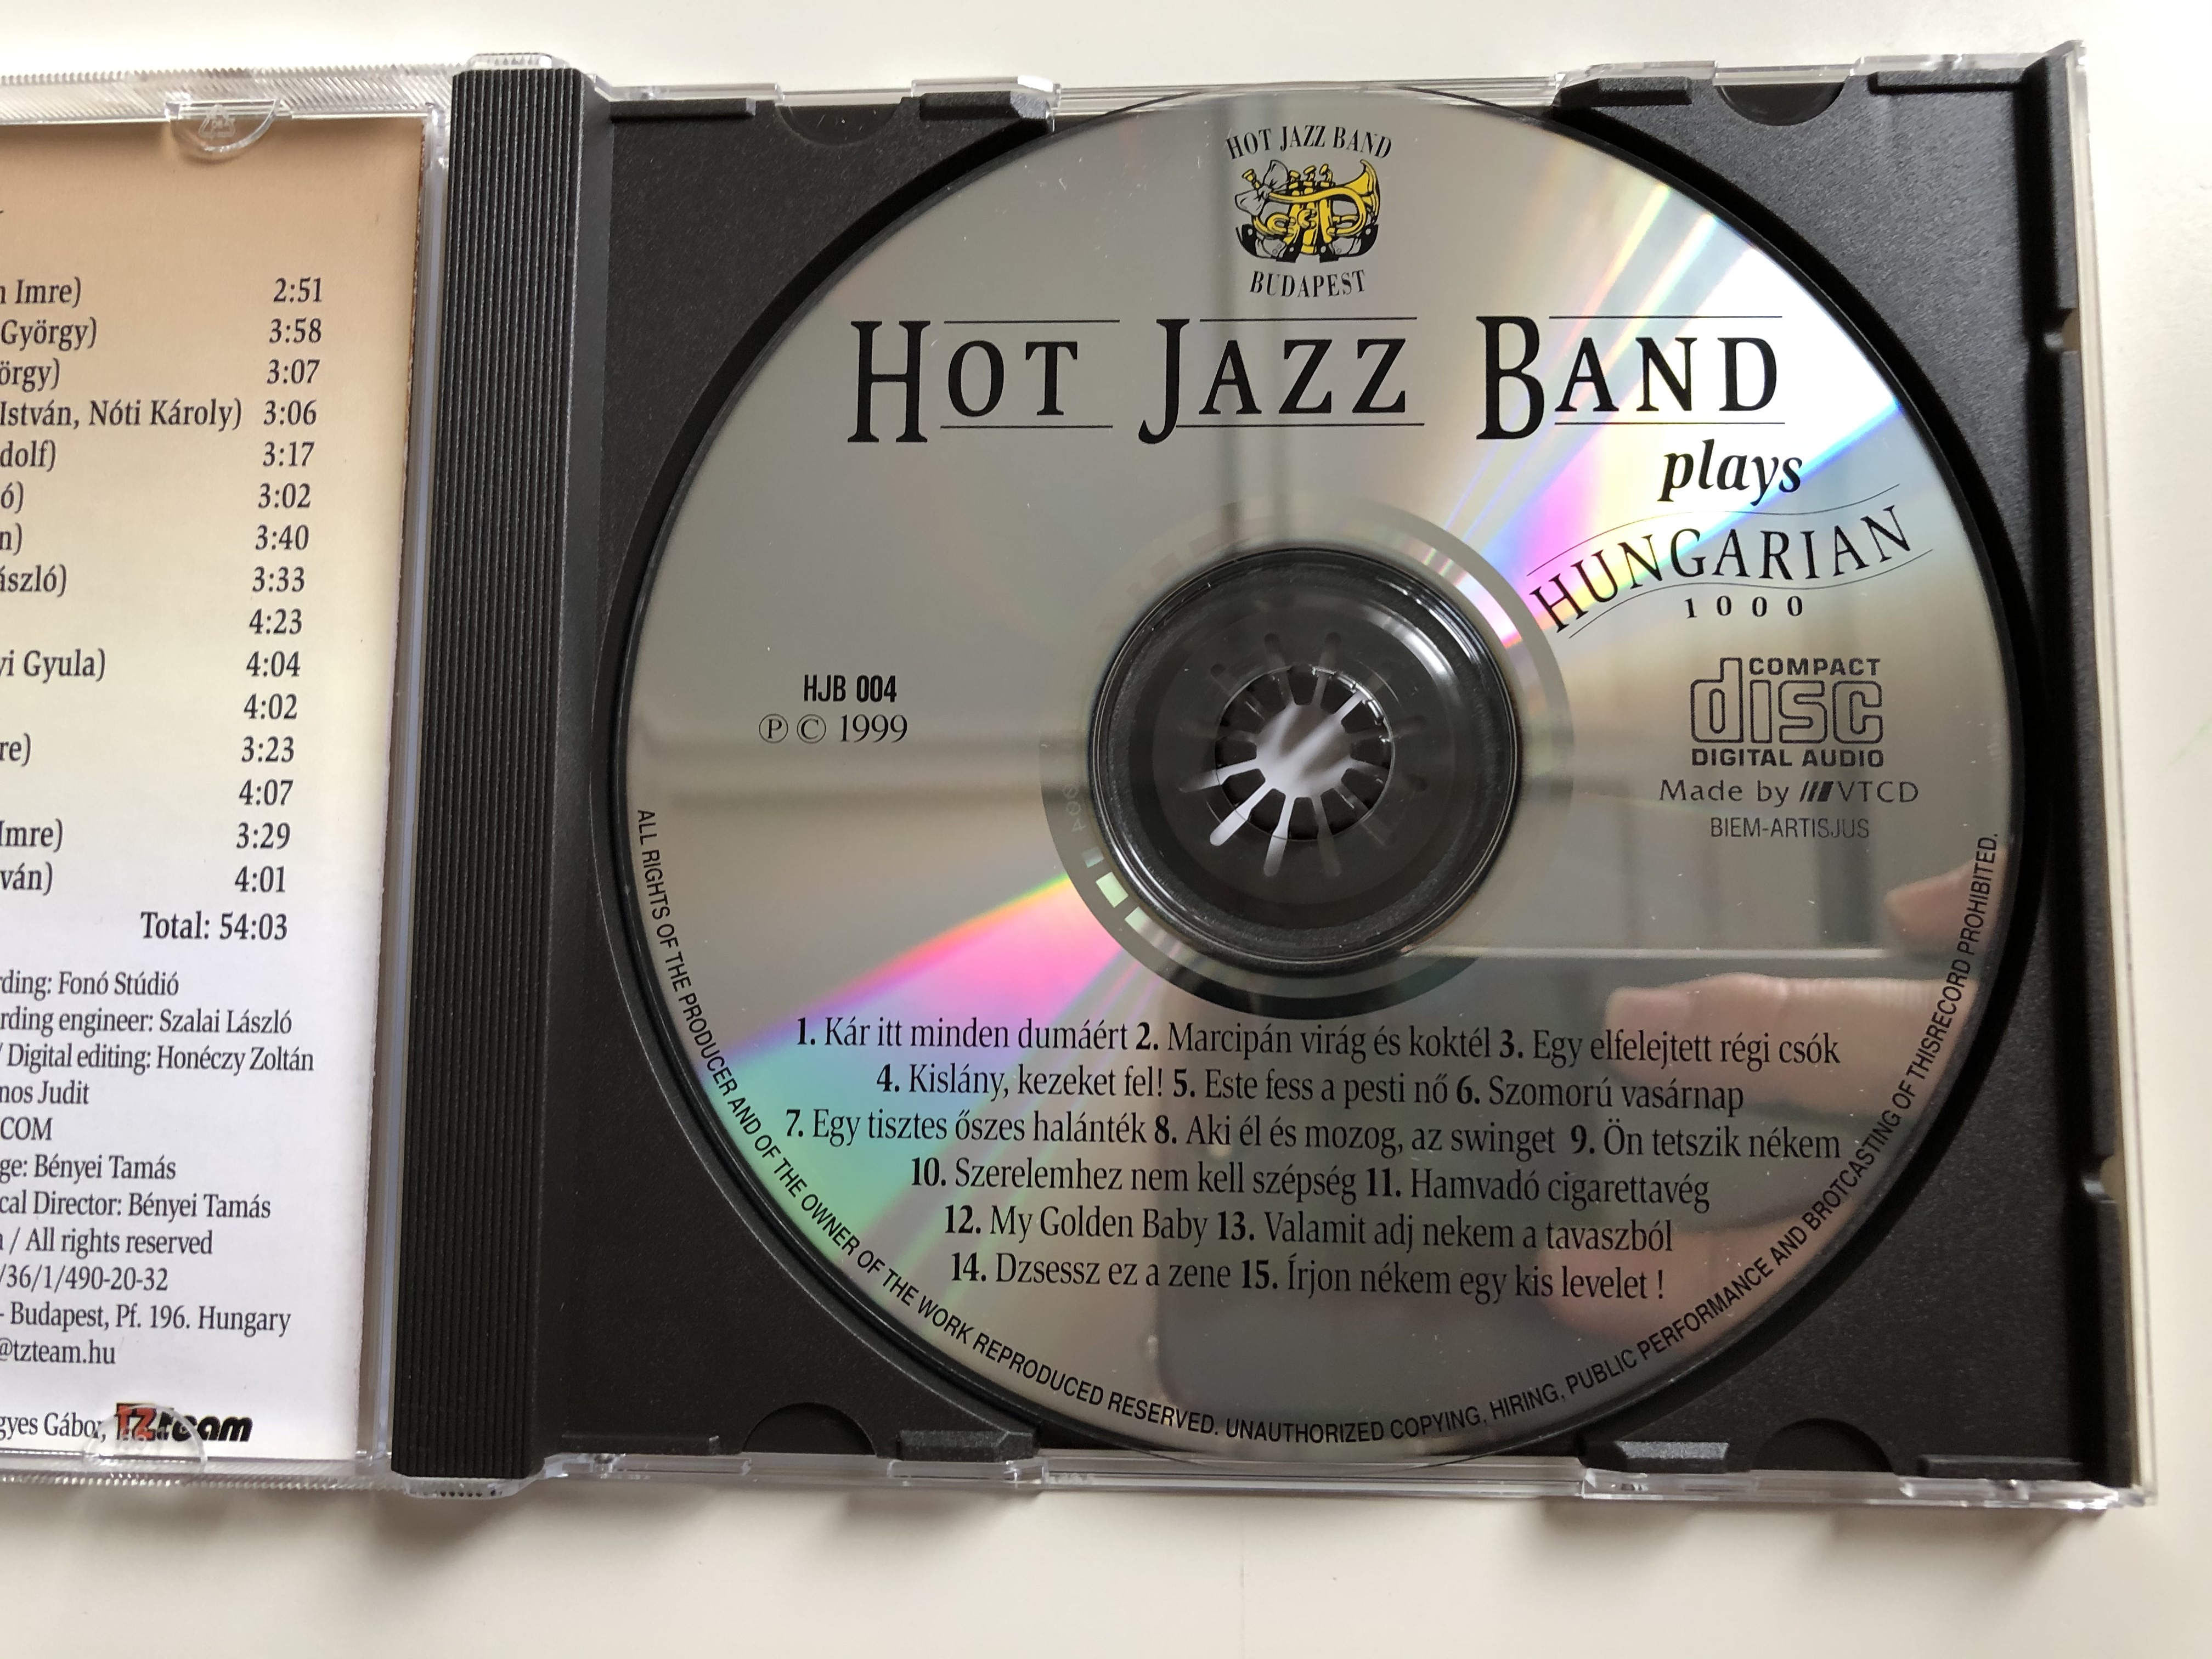 hot-jazz-band-plays-hungarian-1000-kisl-ny-kezeket-fel-hamvad-cigarettav-g-k-r-itt-minden-dum-rt-szomor-vas-rnap-este-fess-a-pesti-n-es-meg-tiz-dal-a-multbol-hot-jazz-band-audio-cd-4-.jpg